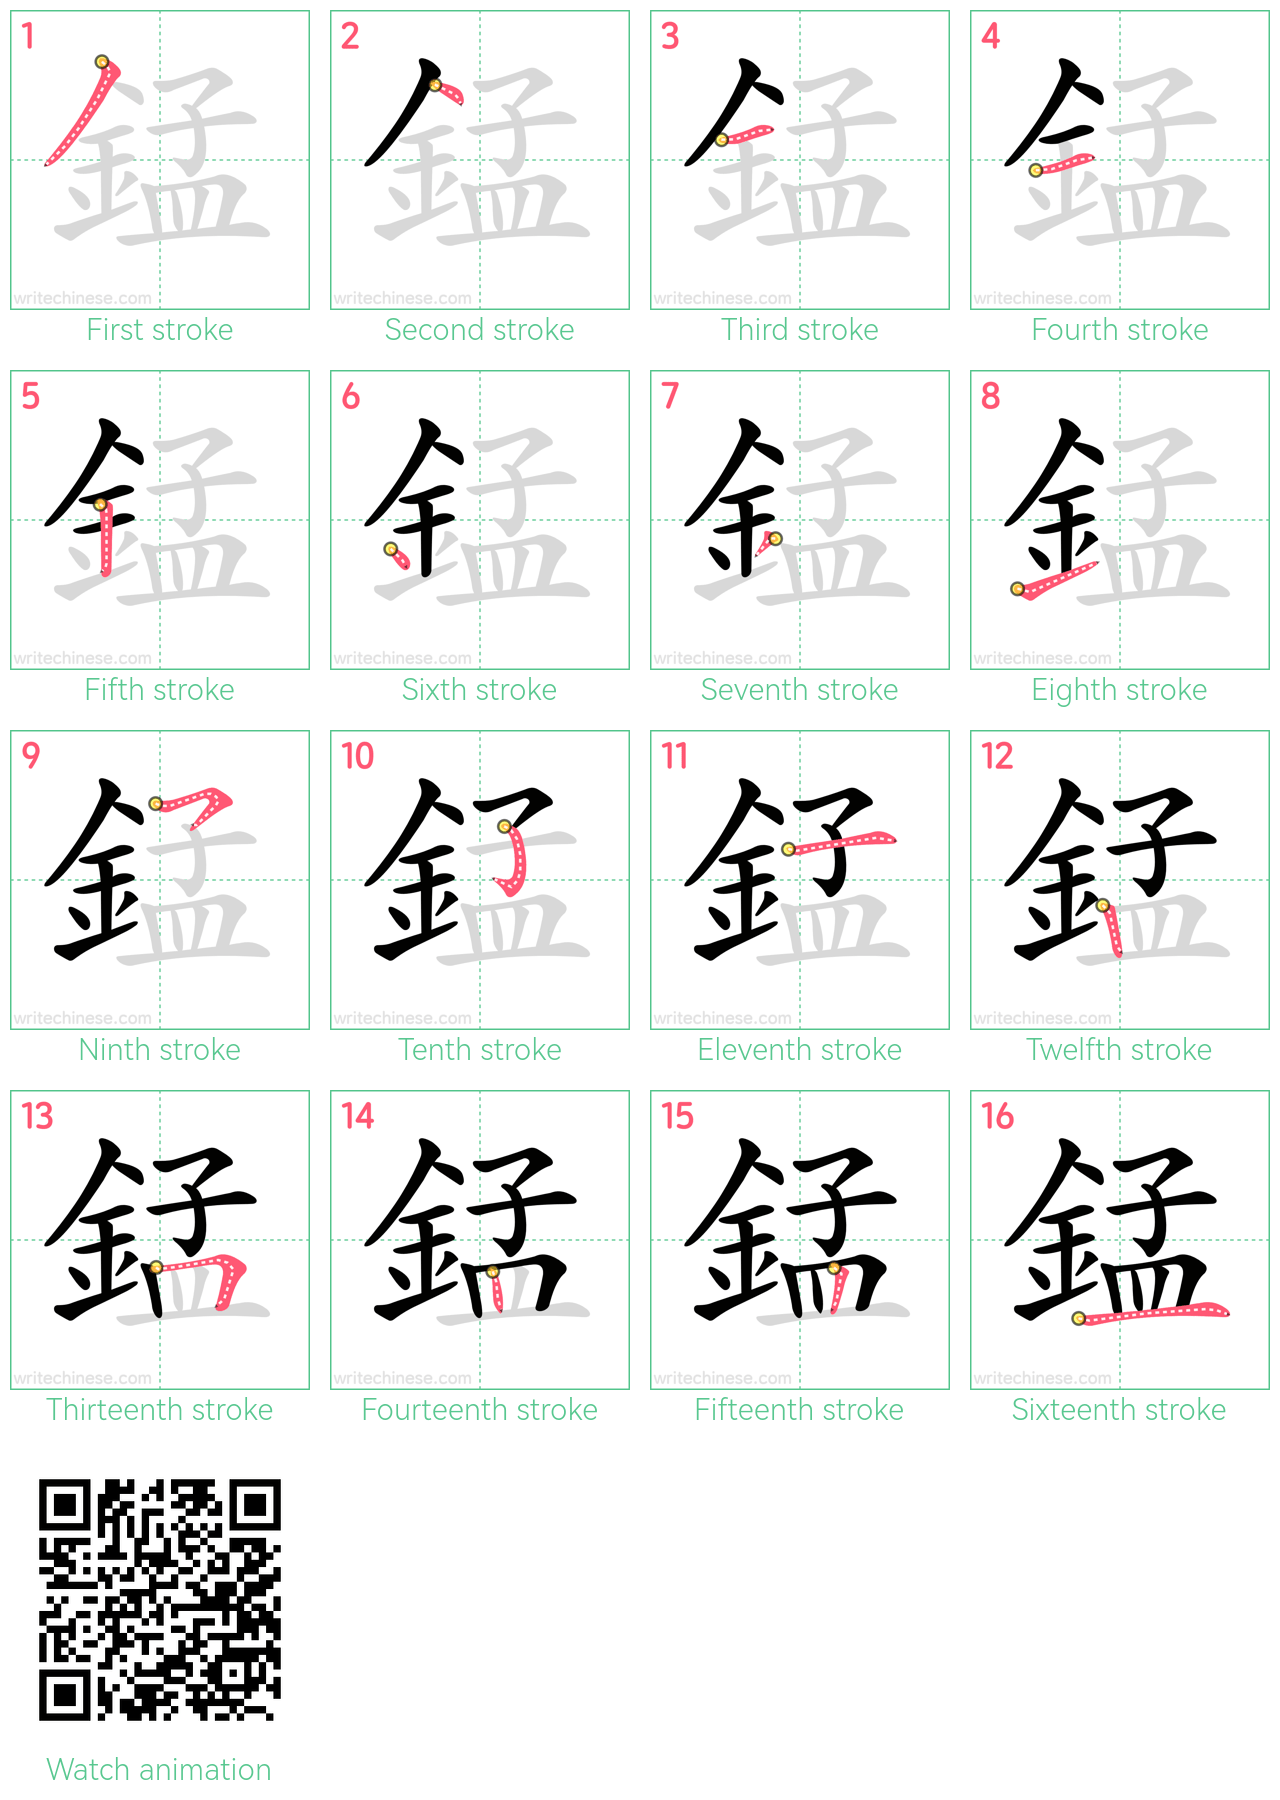 錳 step-by-step stroke order diagrams